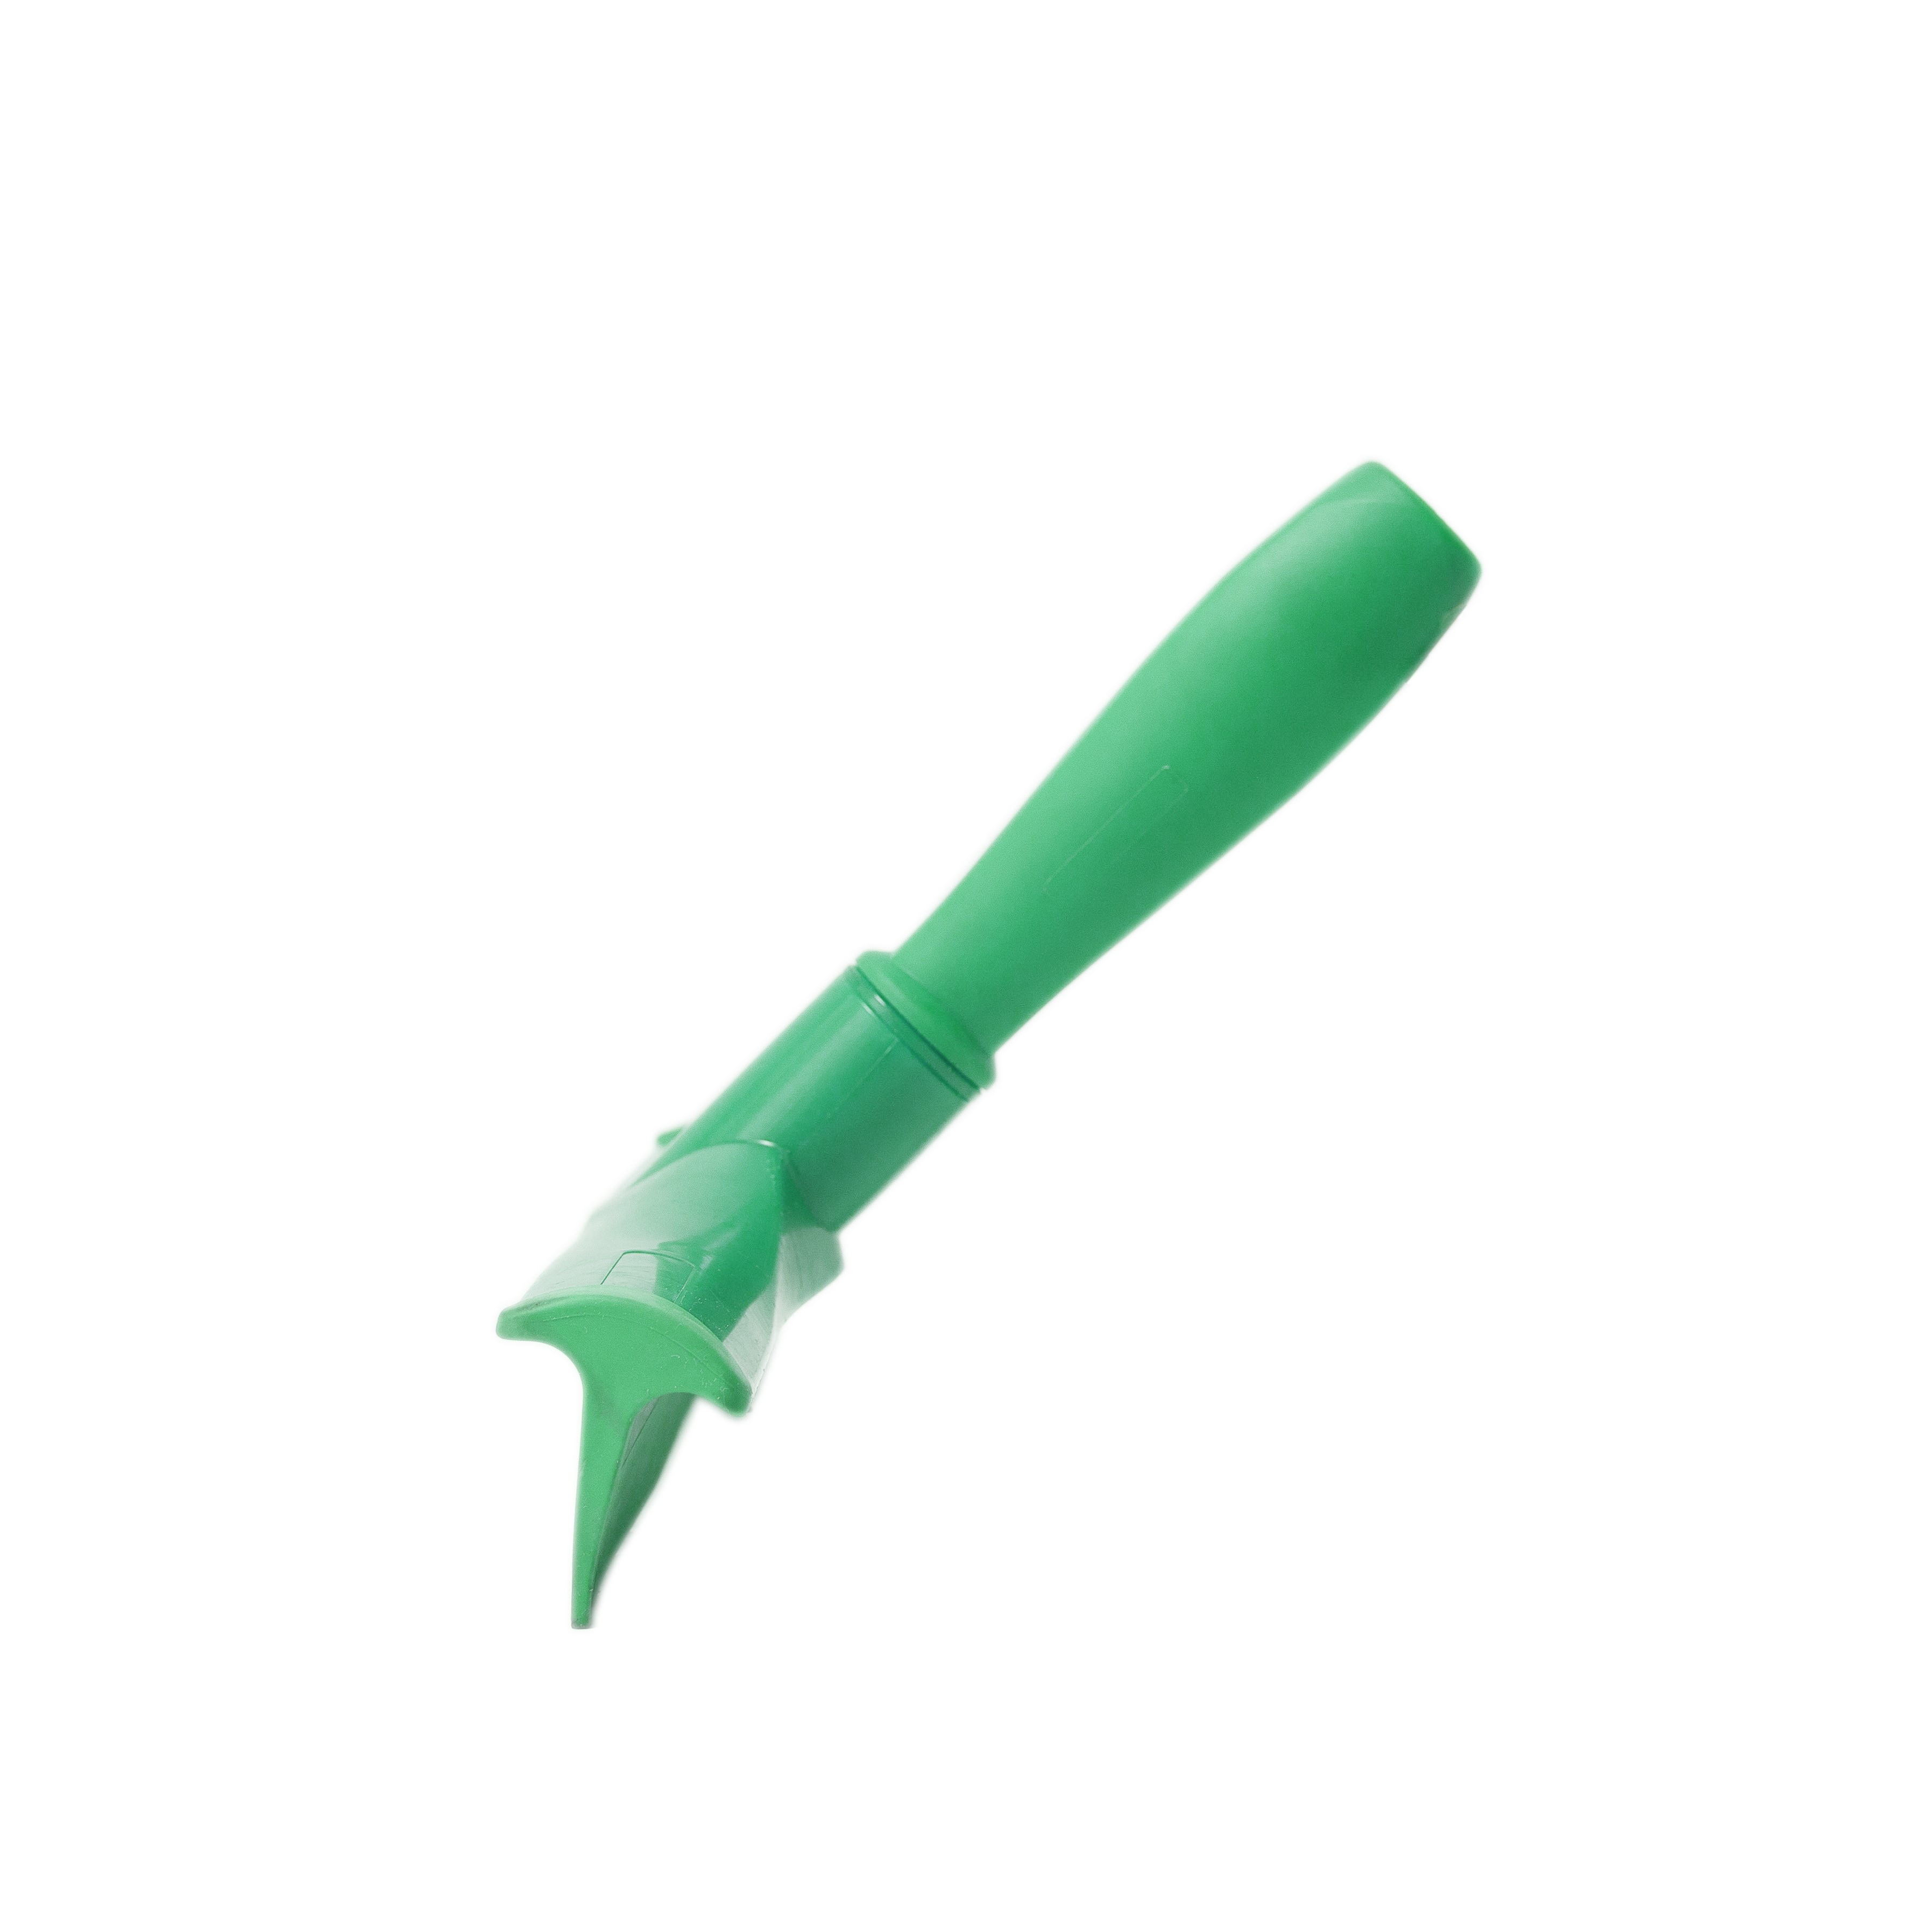 Сгон HACCPER сверхгигиеничный ручной однолезвенный с мини-рукояткой, 300 мм, зеленый